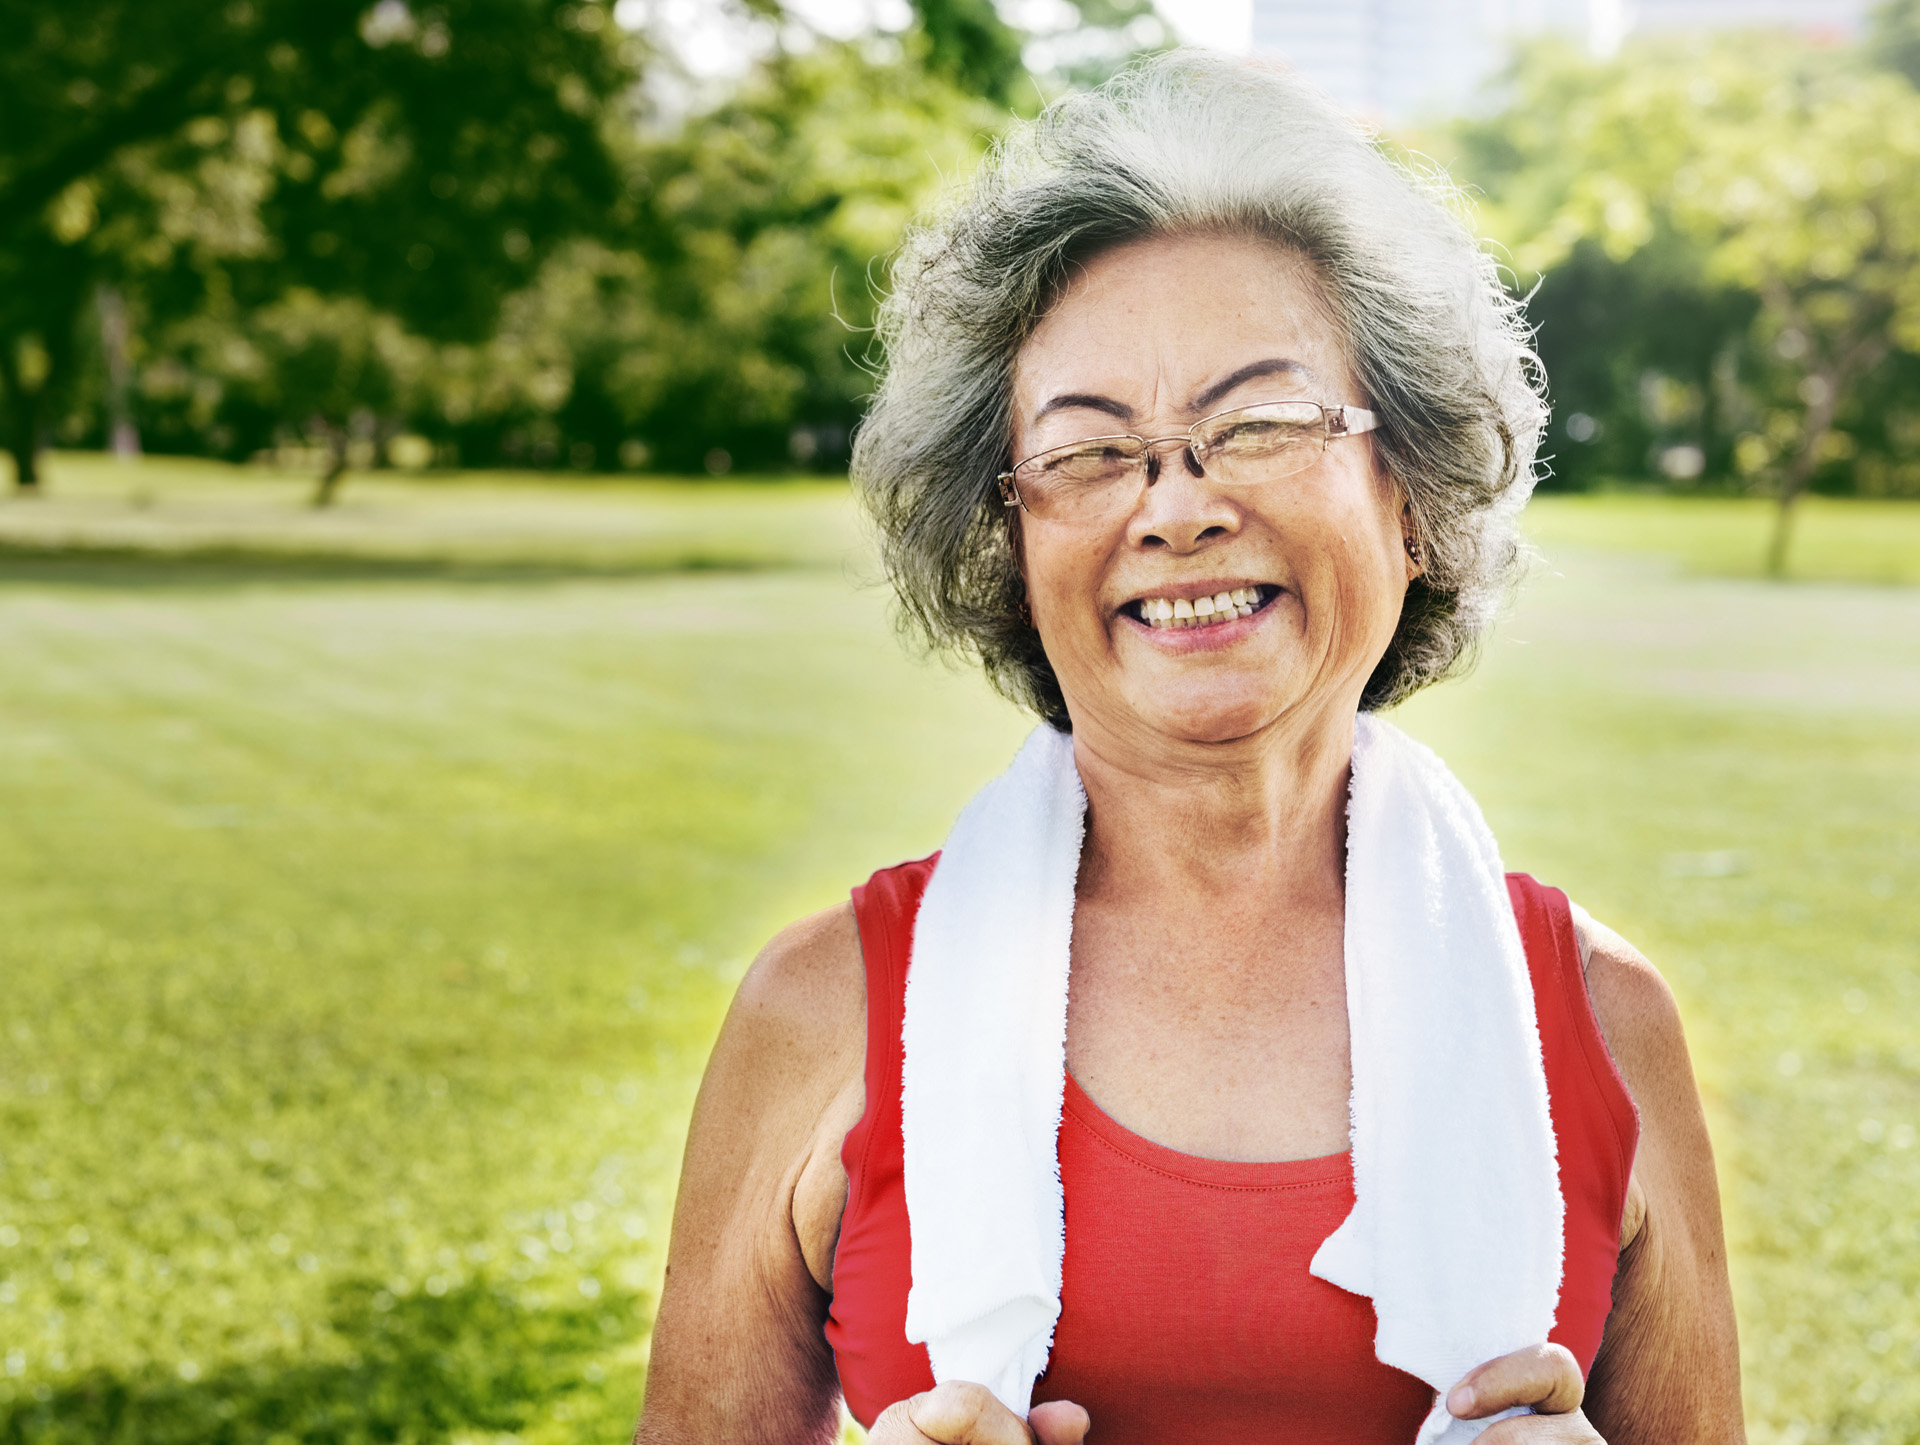 A senior woman exercising at a park